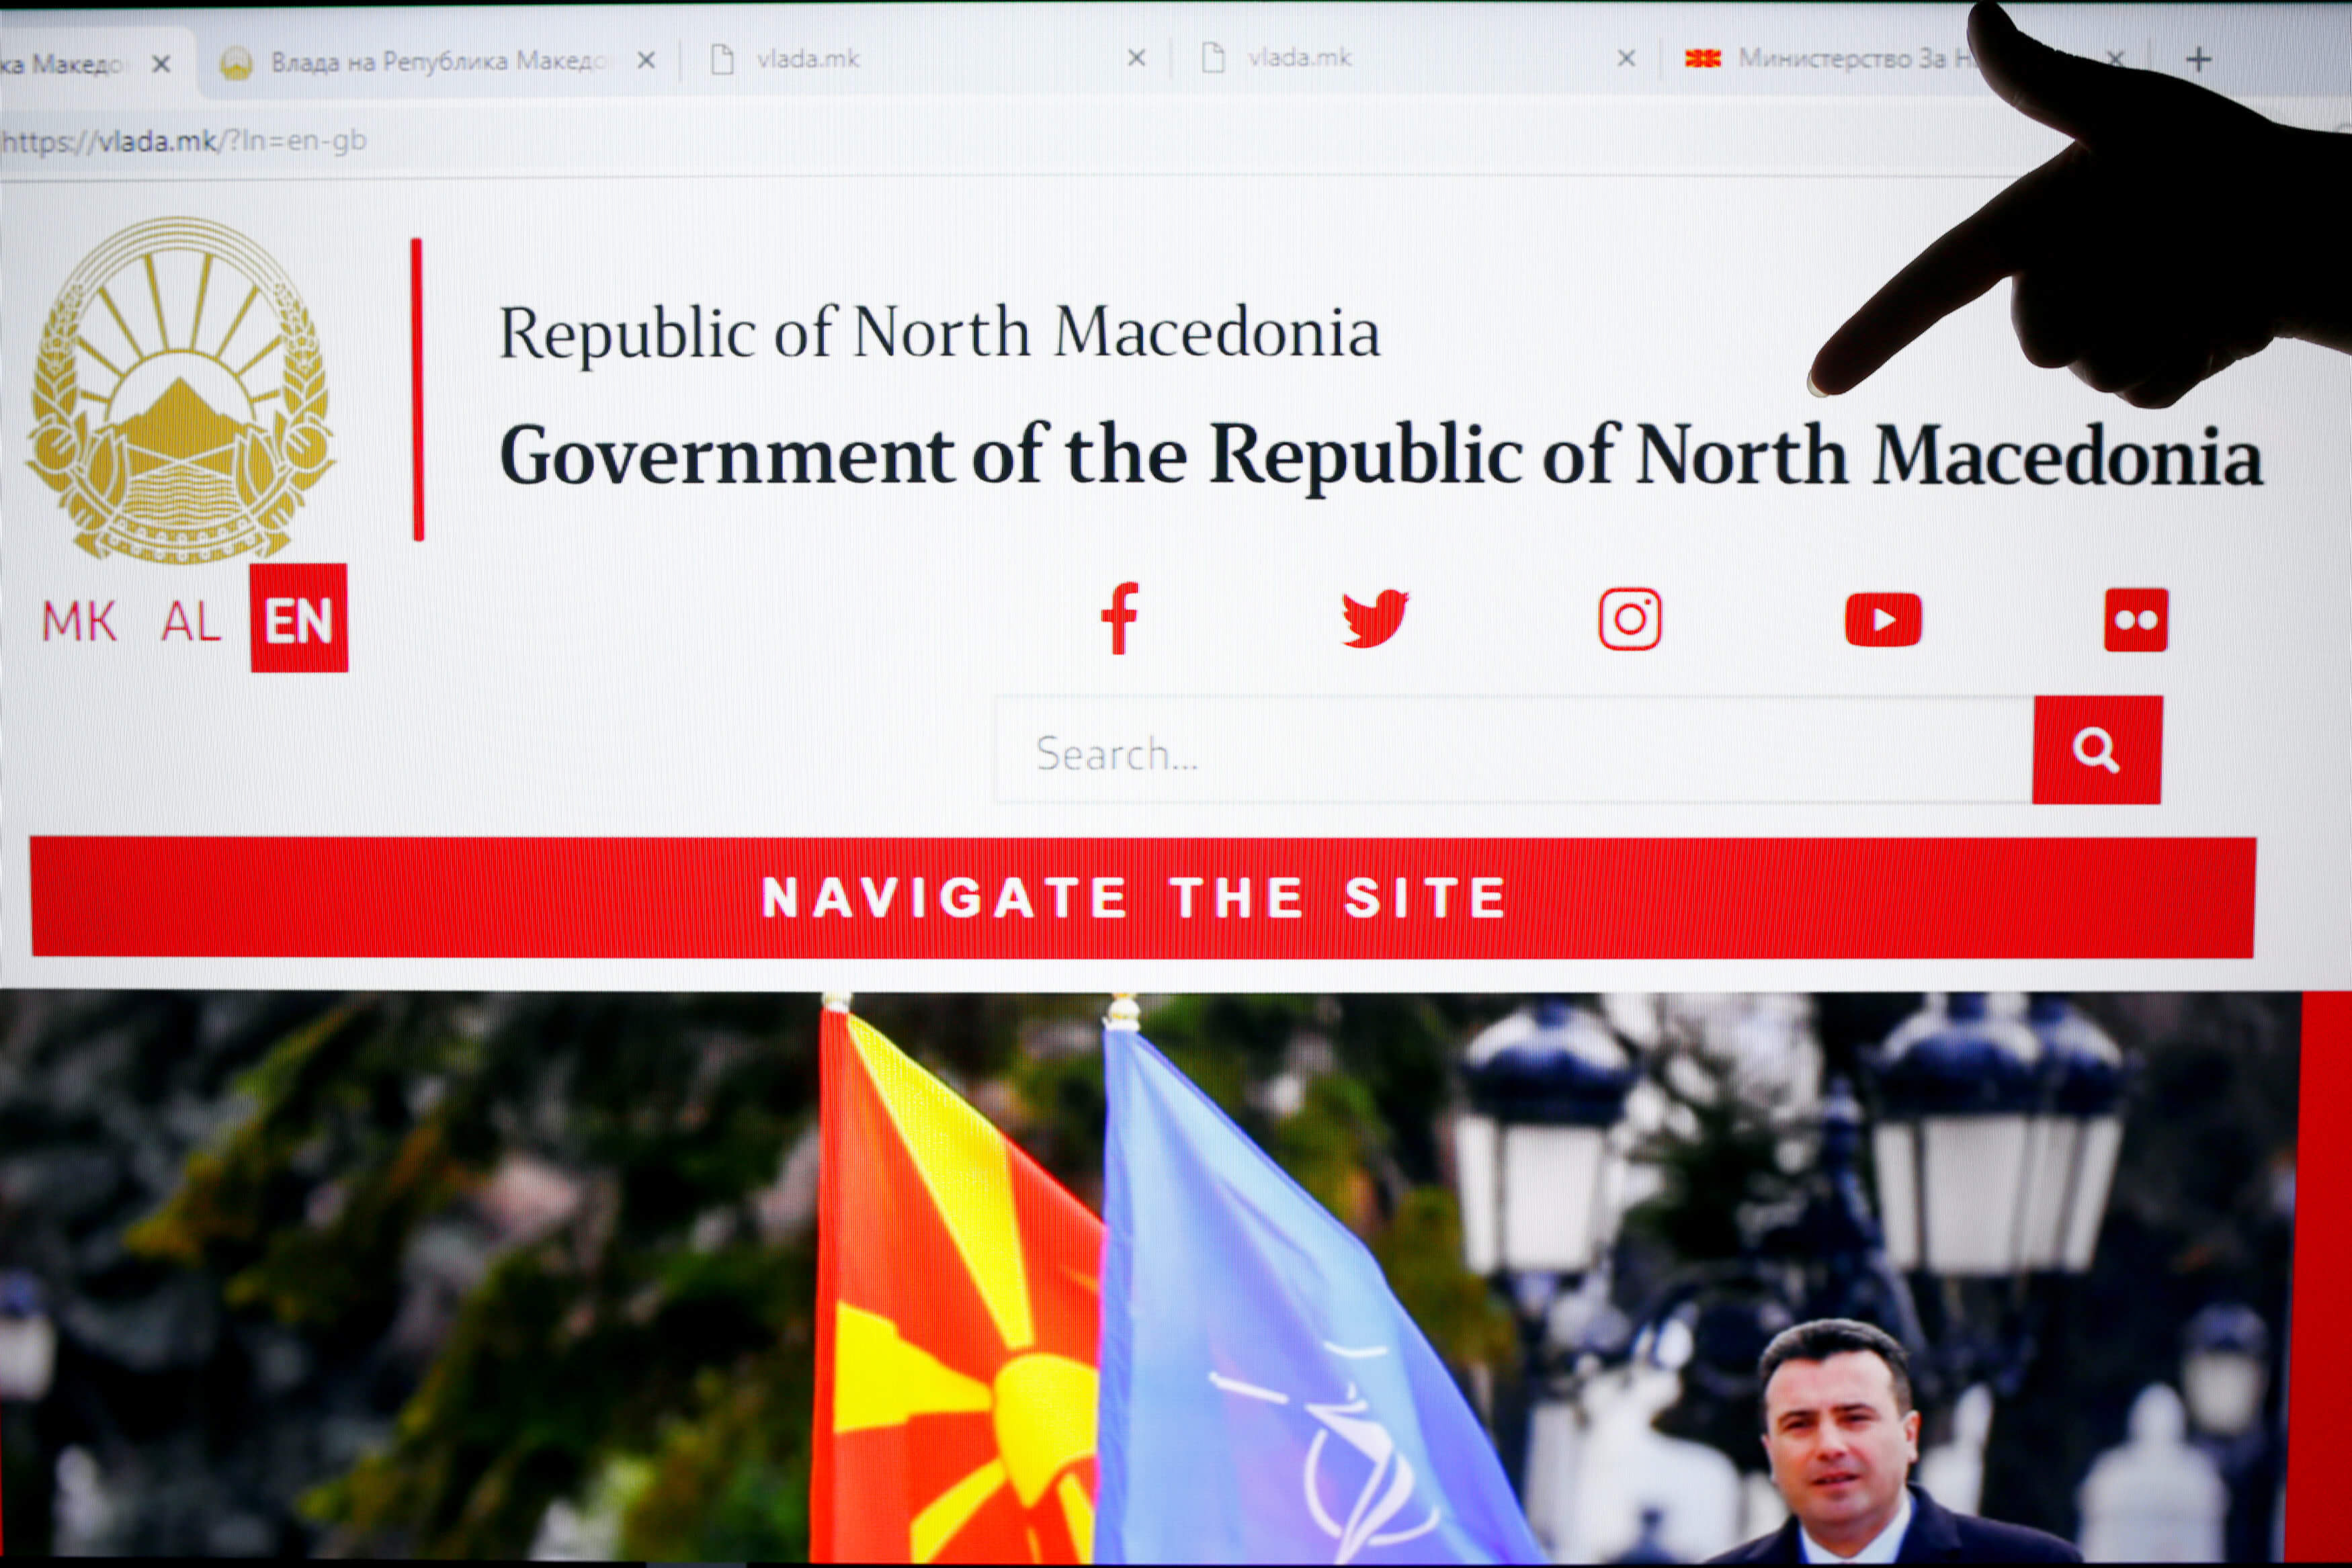 Βόρεια Μακεδονία it is – Αλλάζουν πινακίδες και διαβατήρια – Όλο το χρονοδιάγραμμα